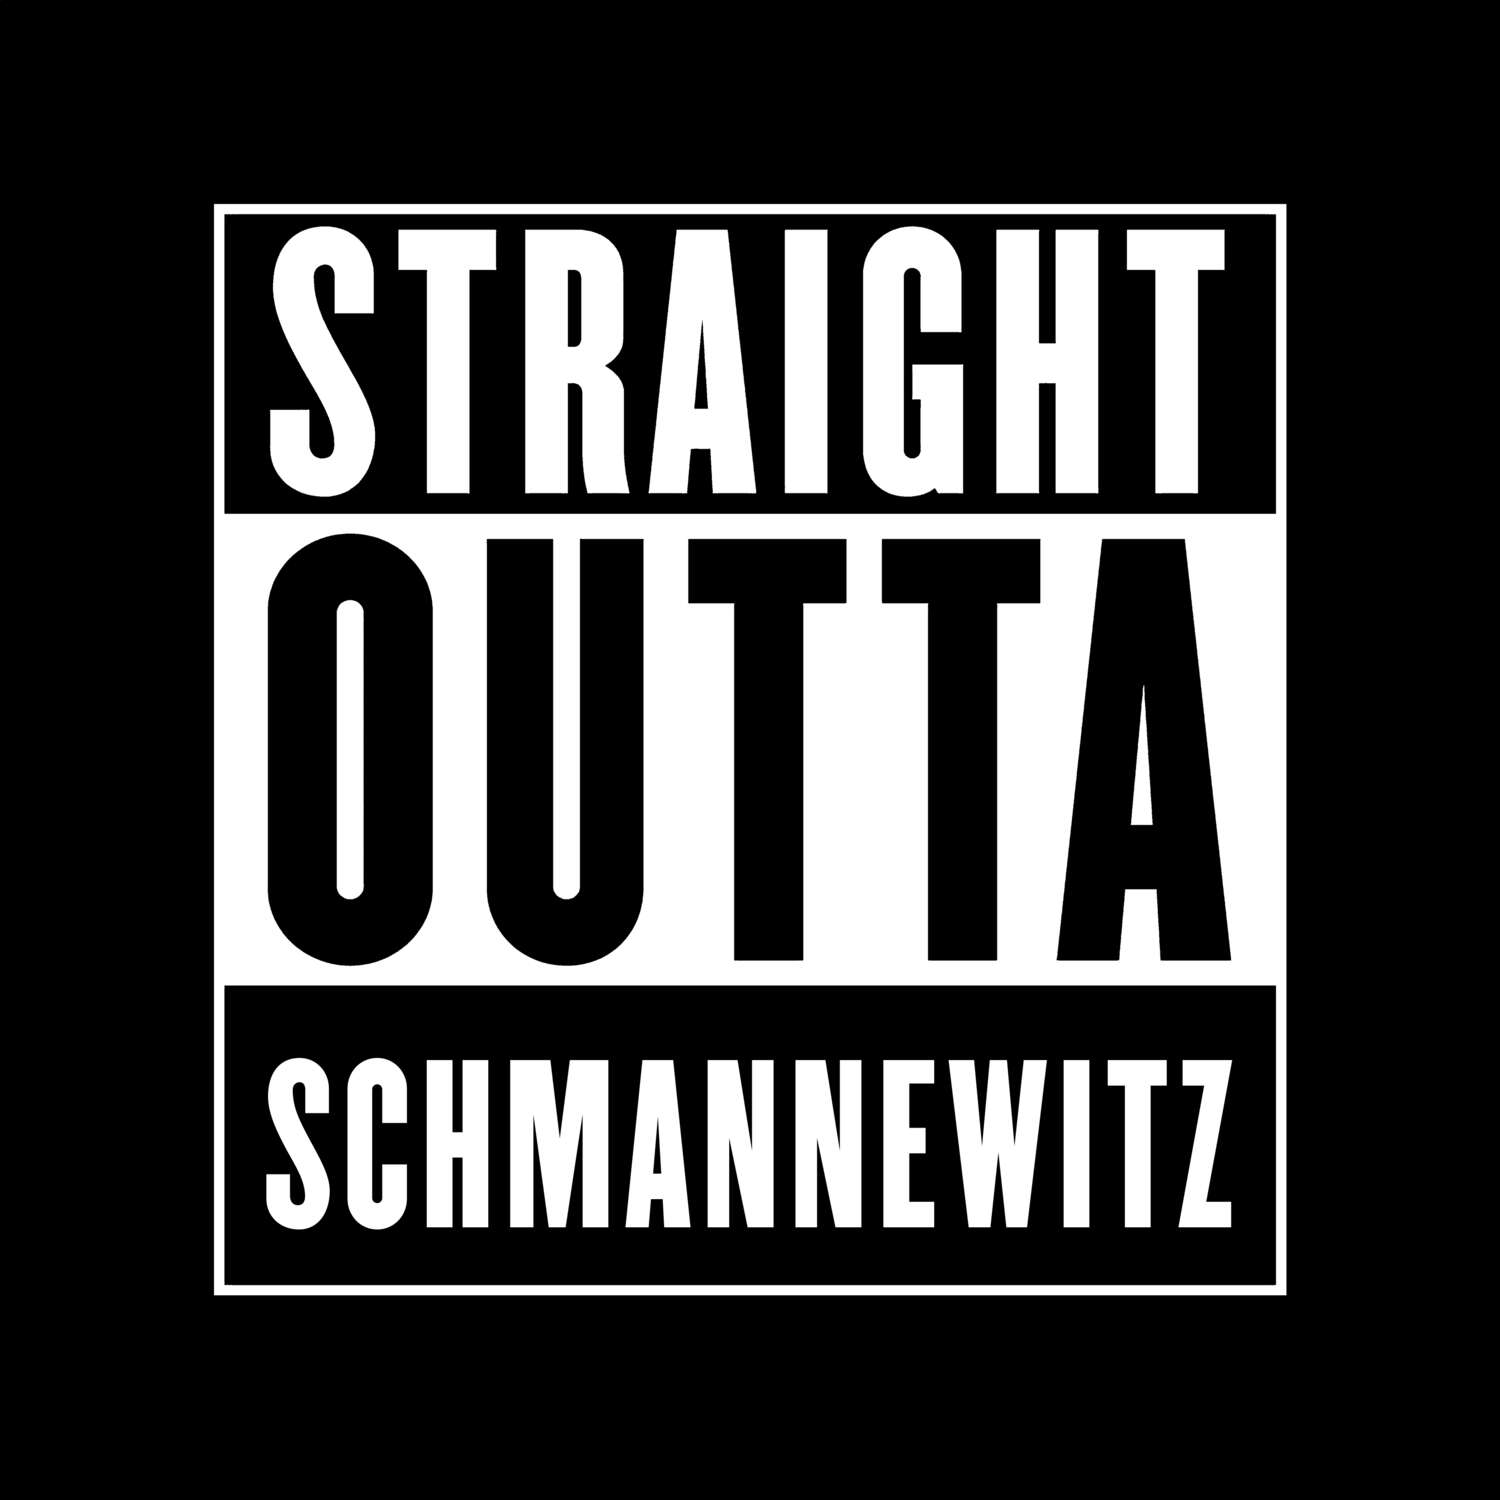 Schmannewitz T-Shirt »Straight Outta«